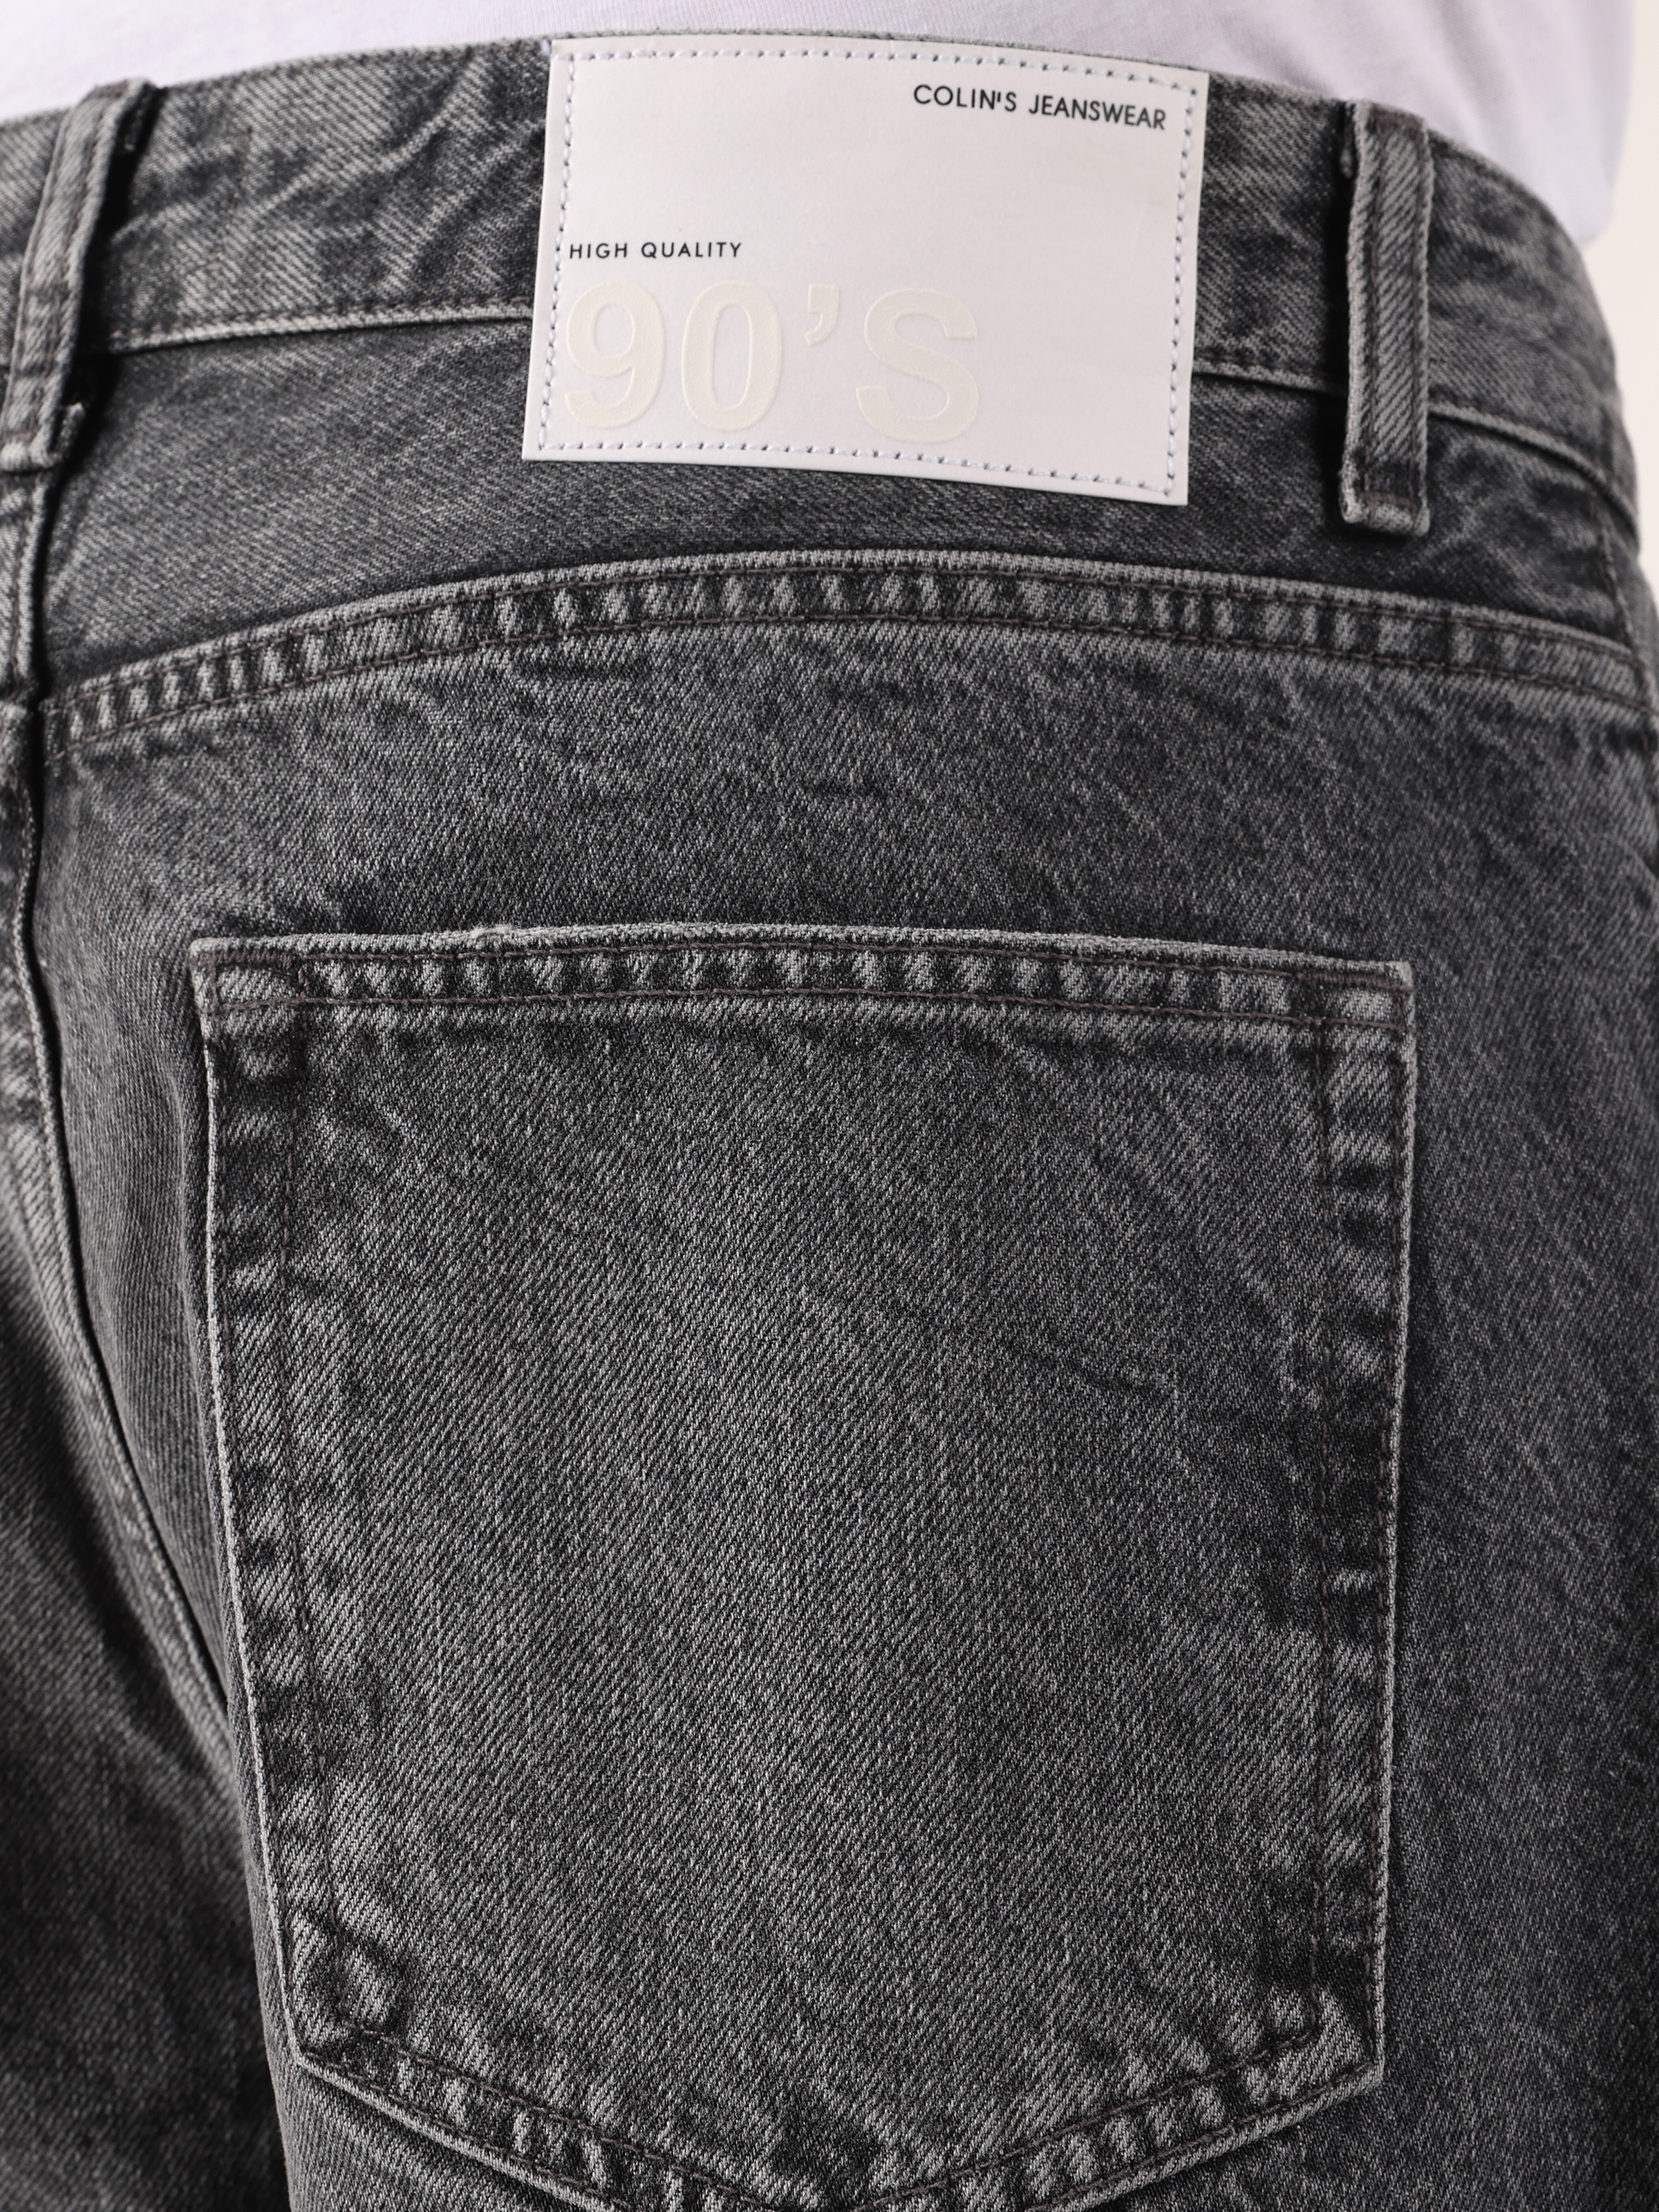 اعرض التفاصيل لـ 057 ميلاس بنطال جينز رجالي فضفاض ومريح باللون الرمادي